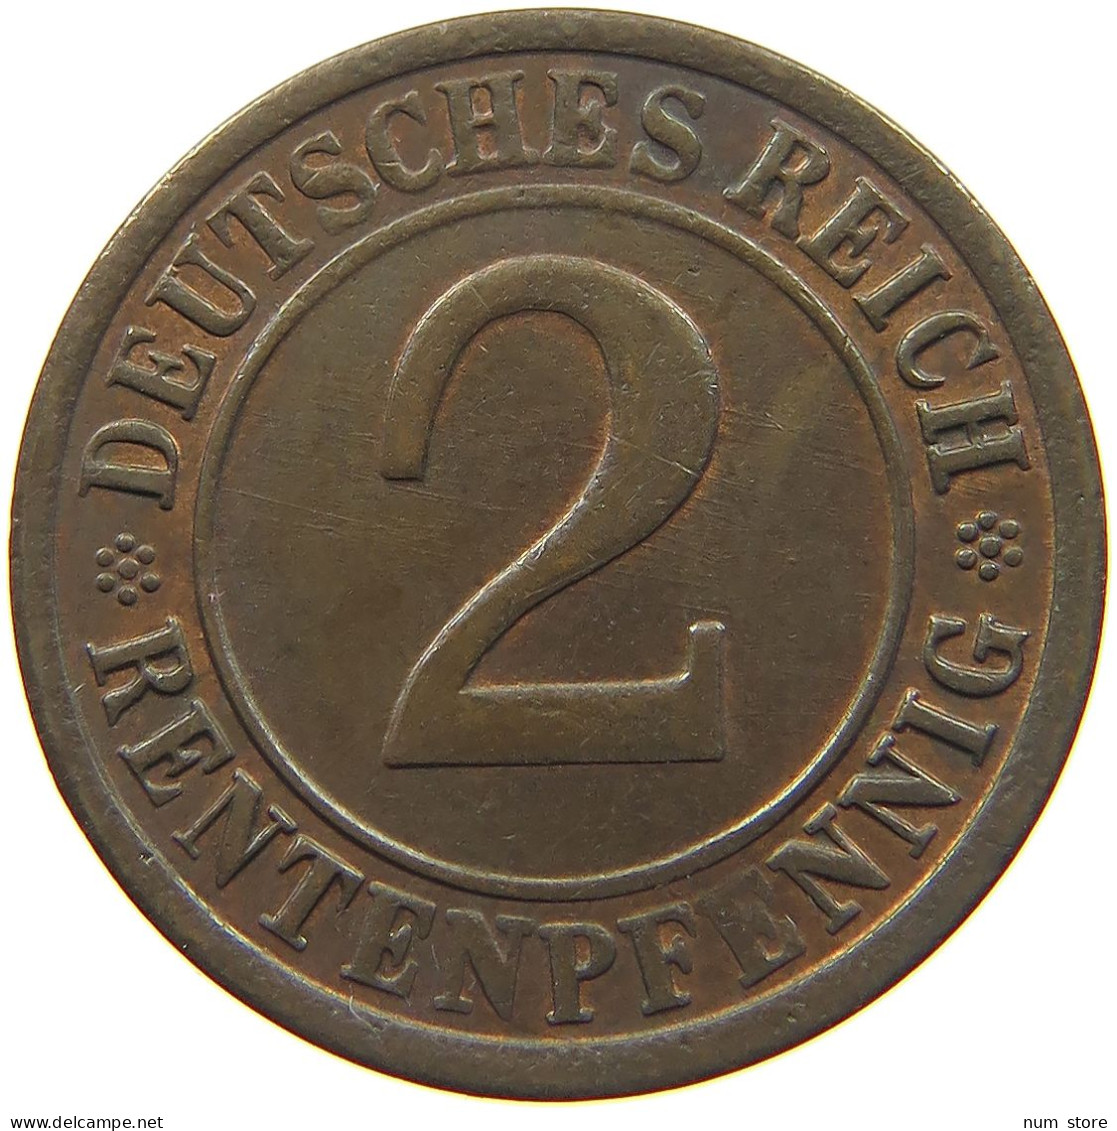 WEIMARER REPUBLIK 2 RENTENPFENNIG 1923 G  #MA 022574 - 2 Rentenpfennig & 2 Reichspfennig